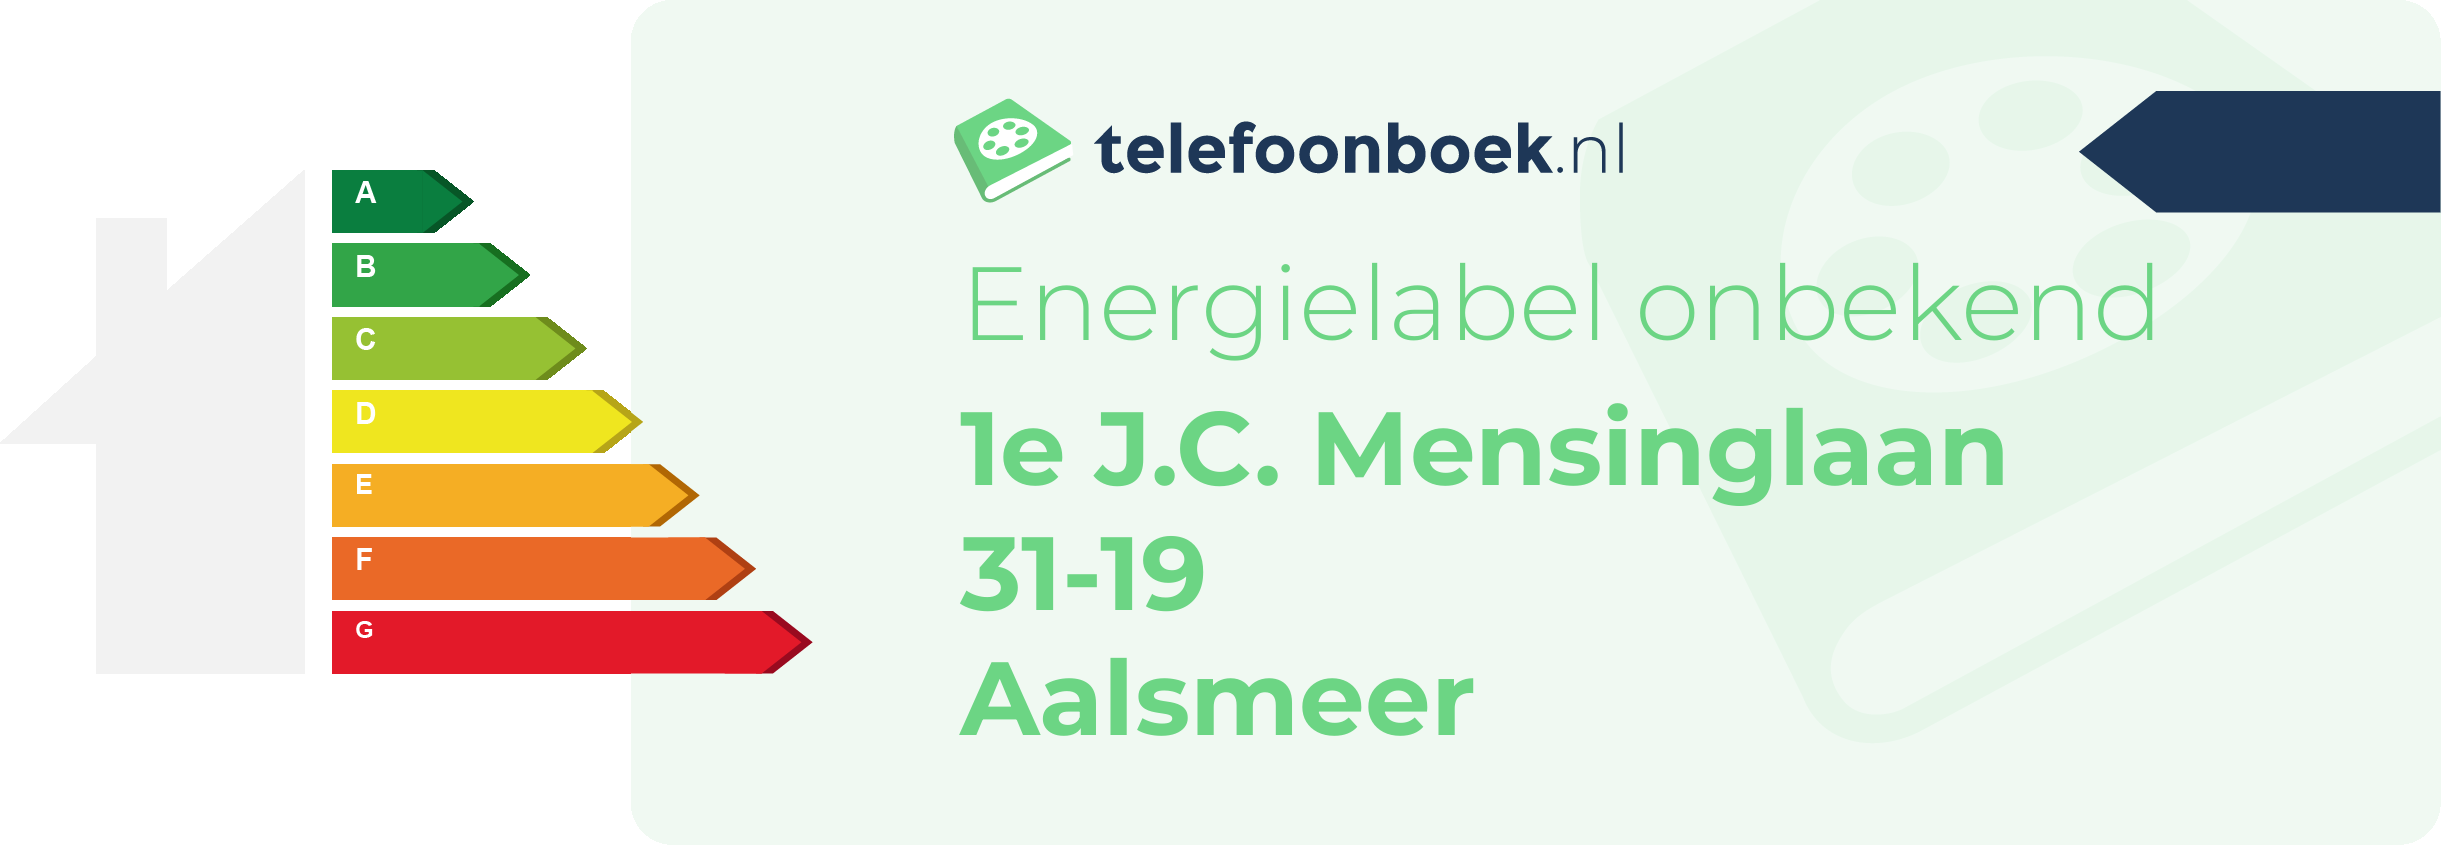 Energielabel 1e J.C. Mensinglaan 31-19 Aalsmeer